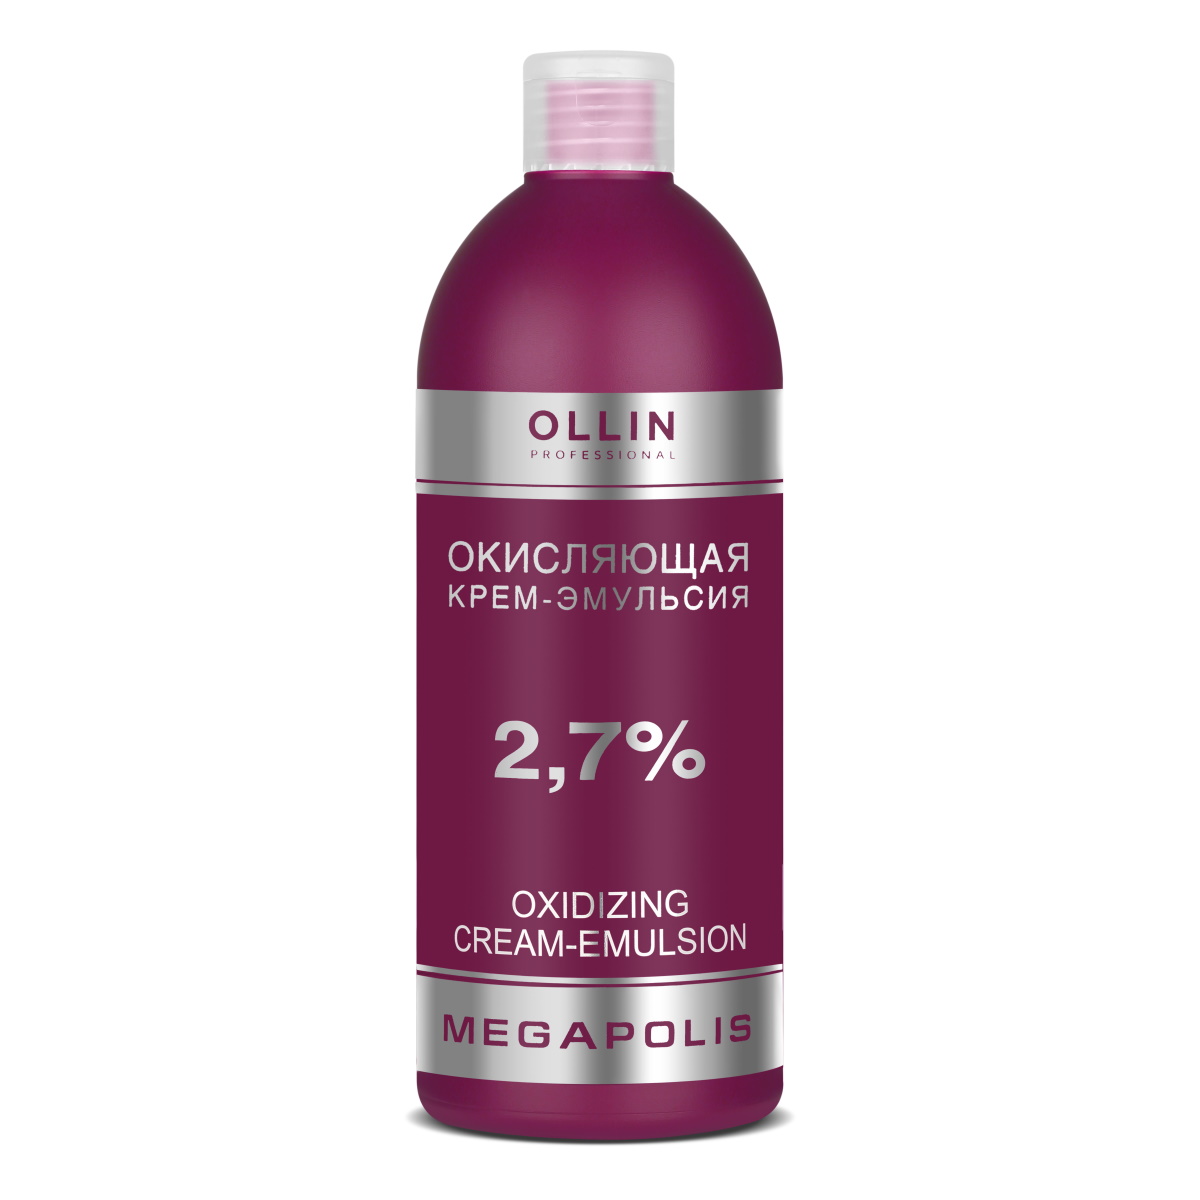 Окисляющая крем-эмульсия Ollin Professional Megapolis 2,7% 500 мл крем краска для бровей и ресниц графит ollin vision set